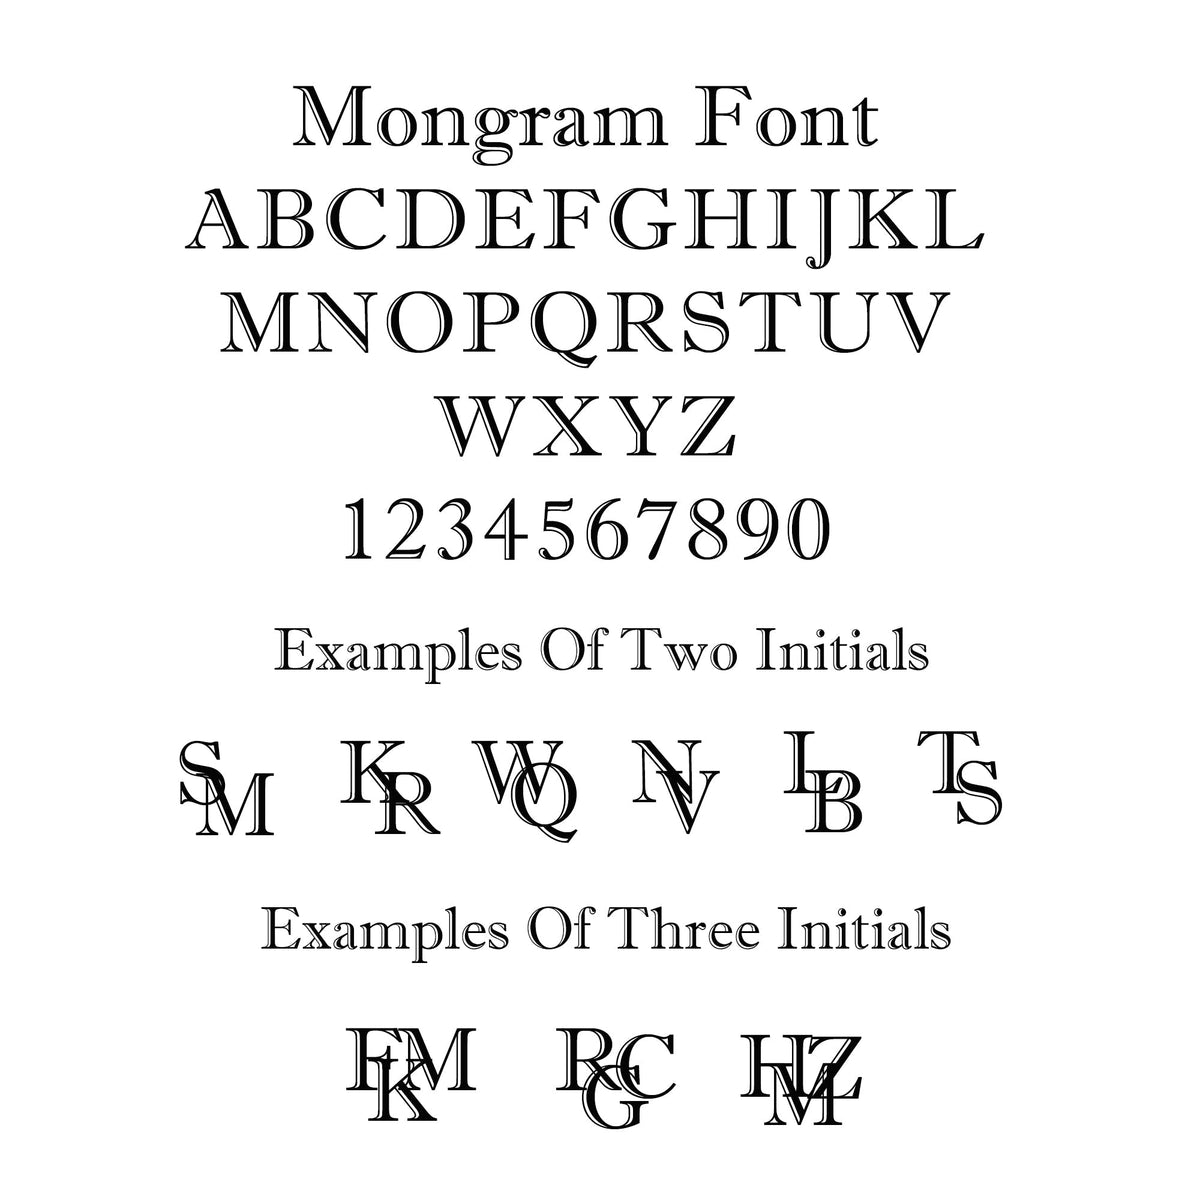 Monogram Initials Round Silver Signet Ring - 3 Initials